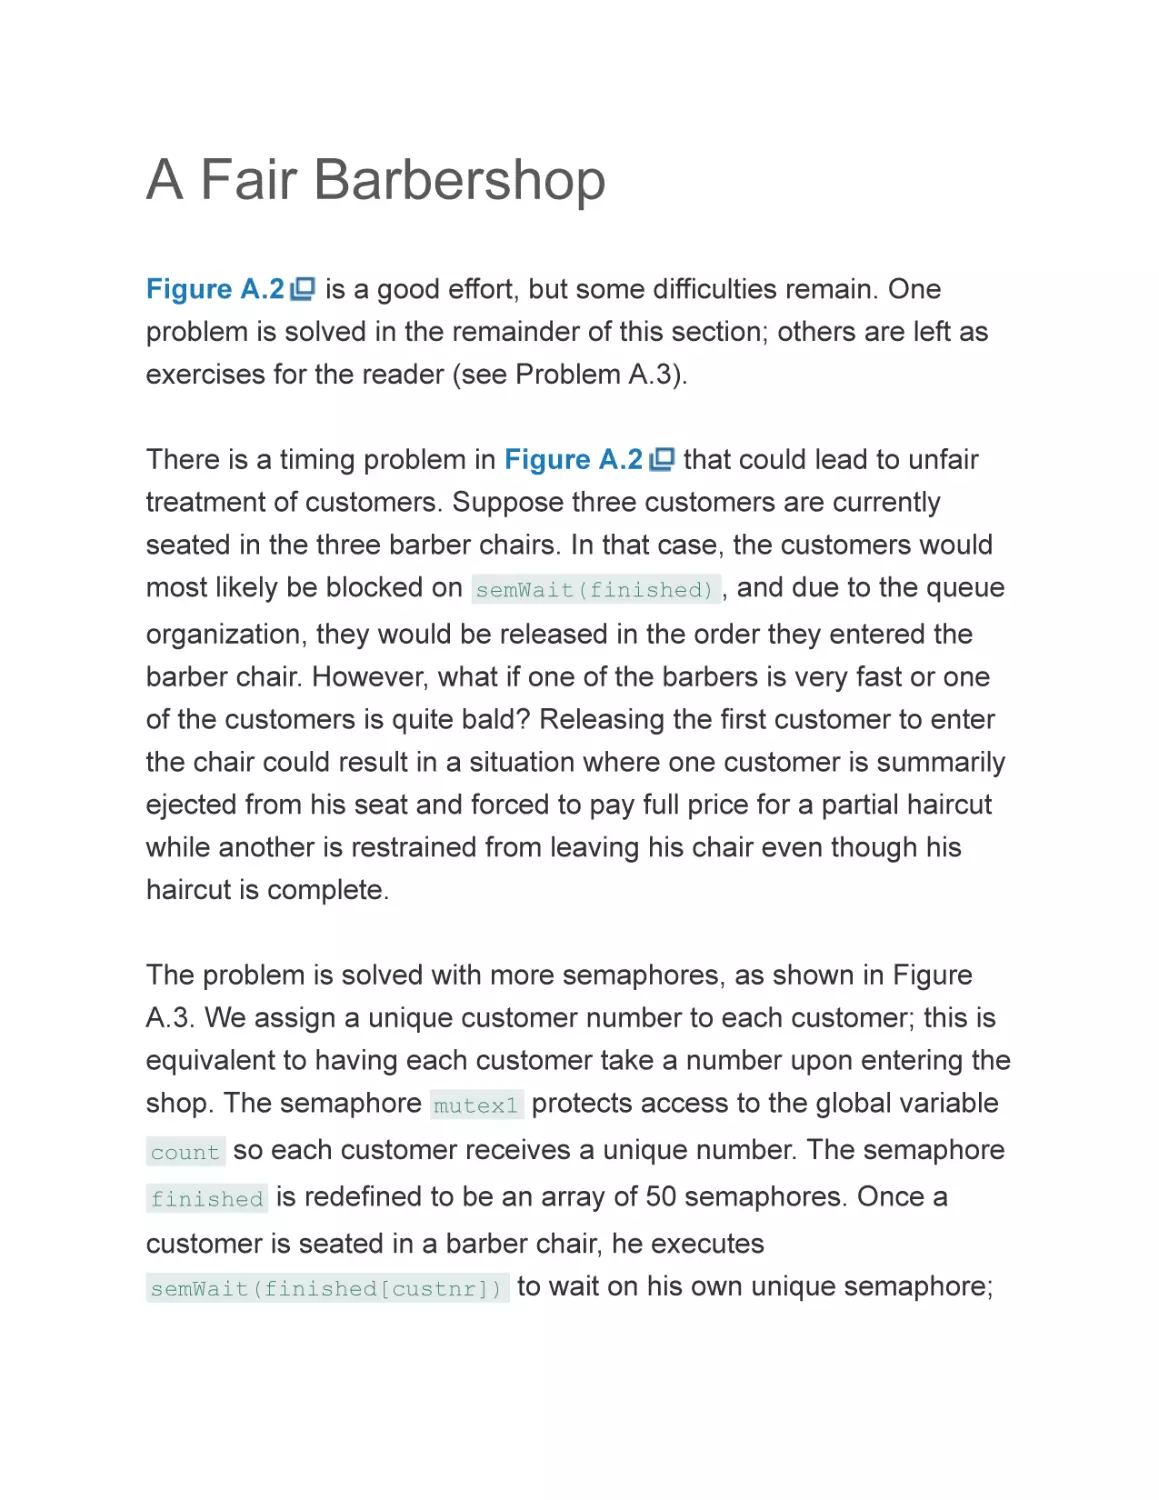 A Fair Barbershop